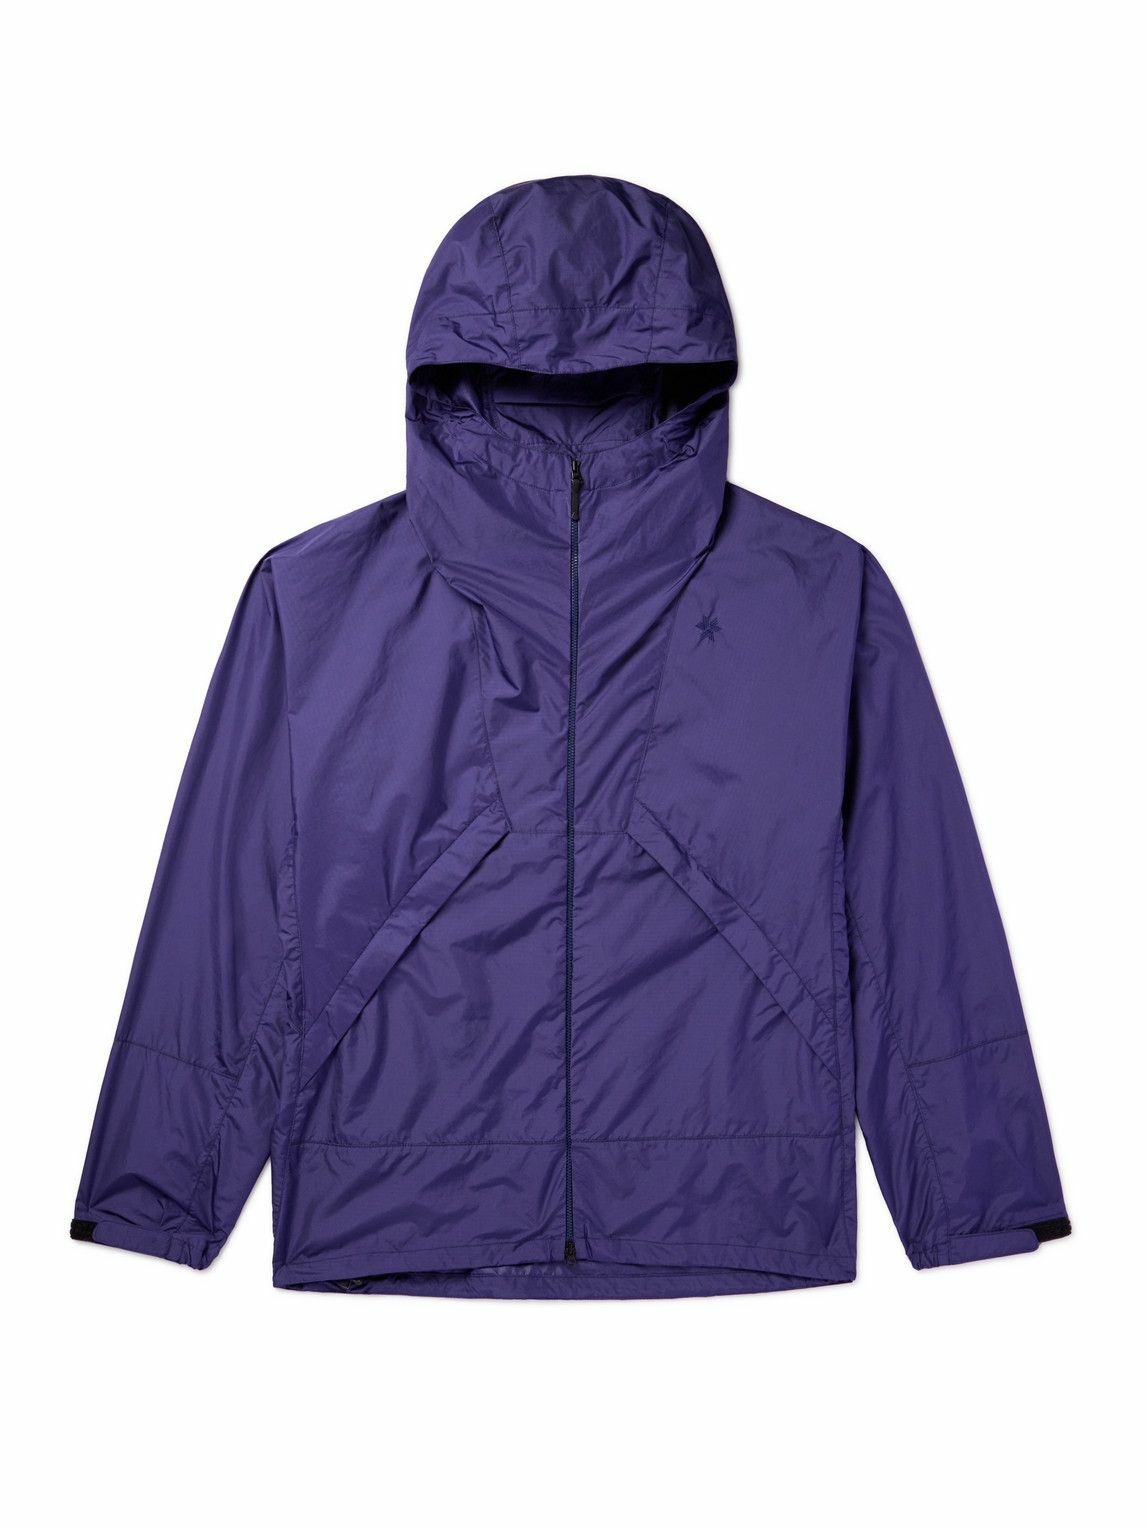 Goldwin - Ripstop Hooded Jacket - Purple Goldwin